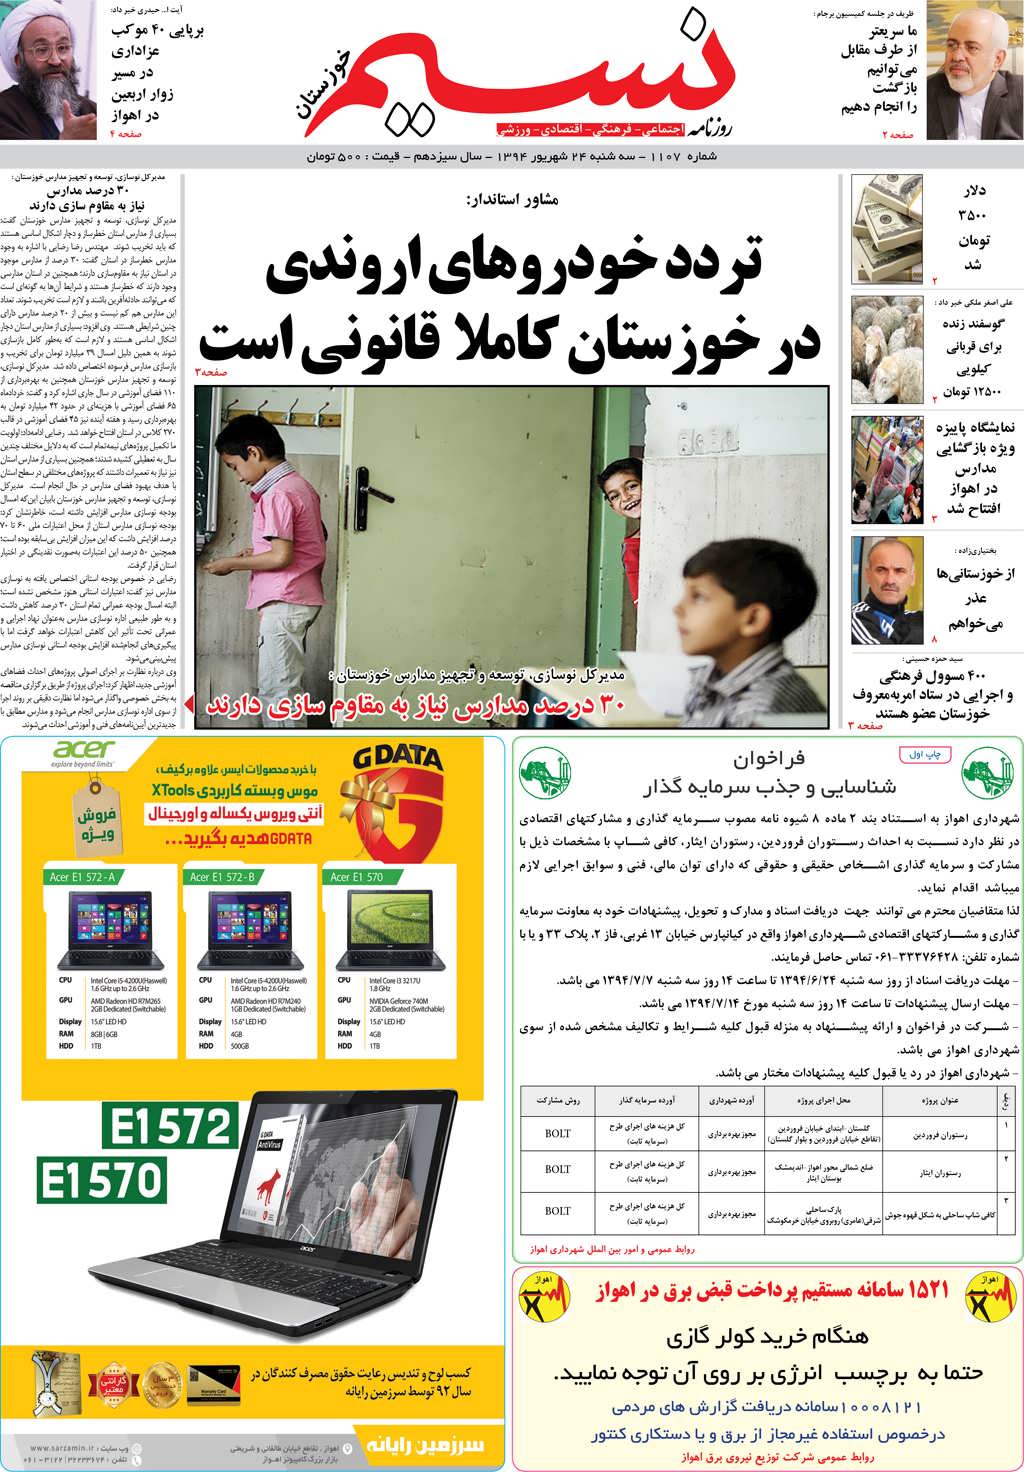 صفحه اصلی روزنامه نسیم شماره 1107